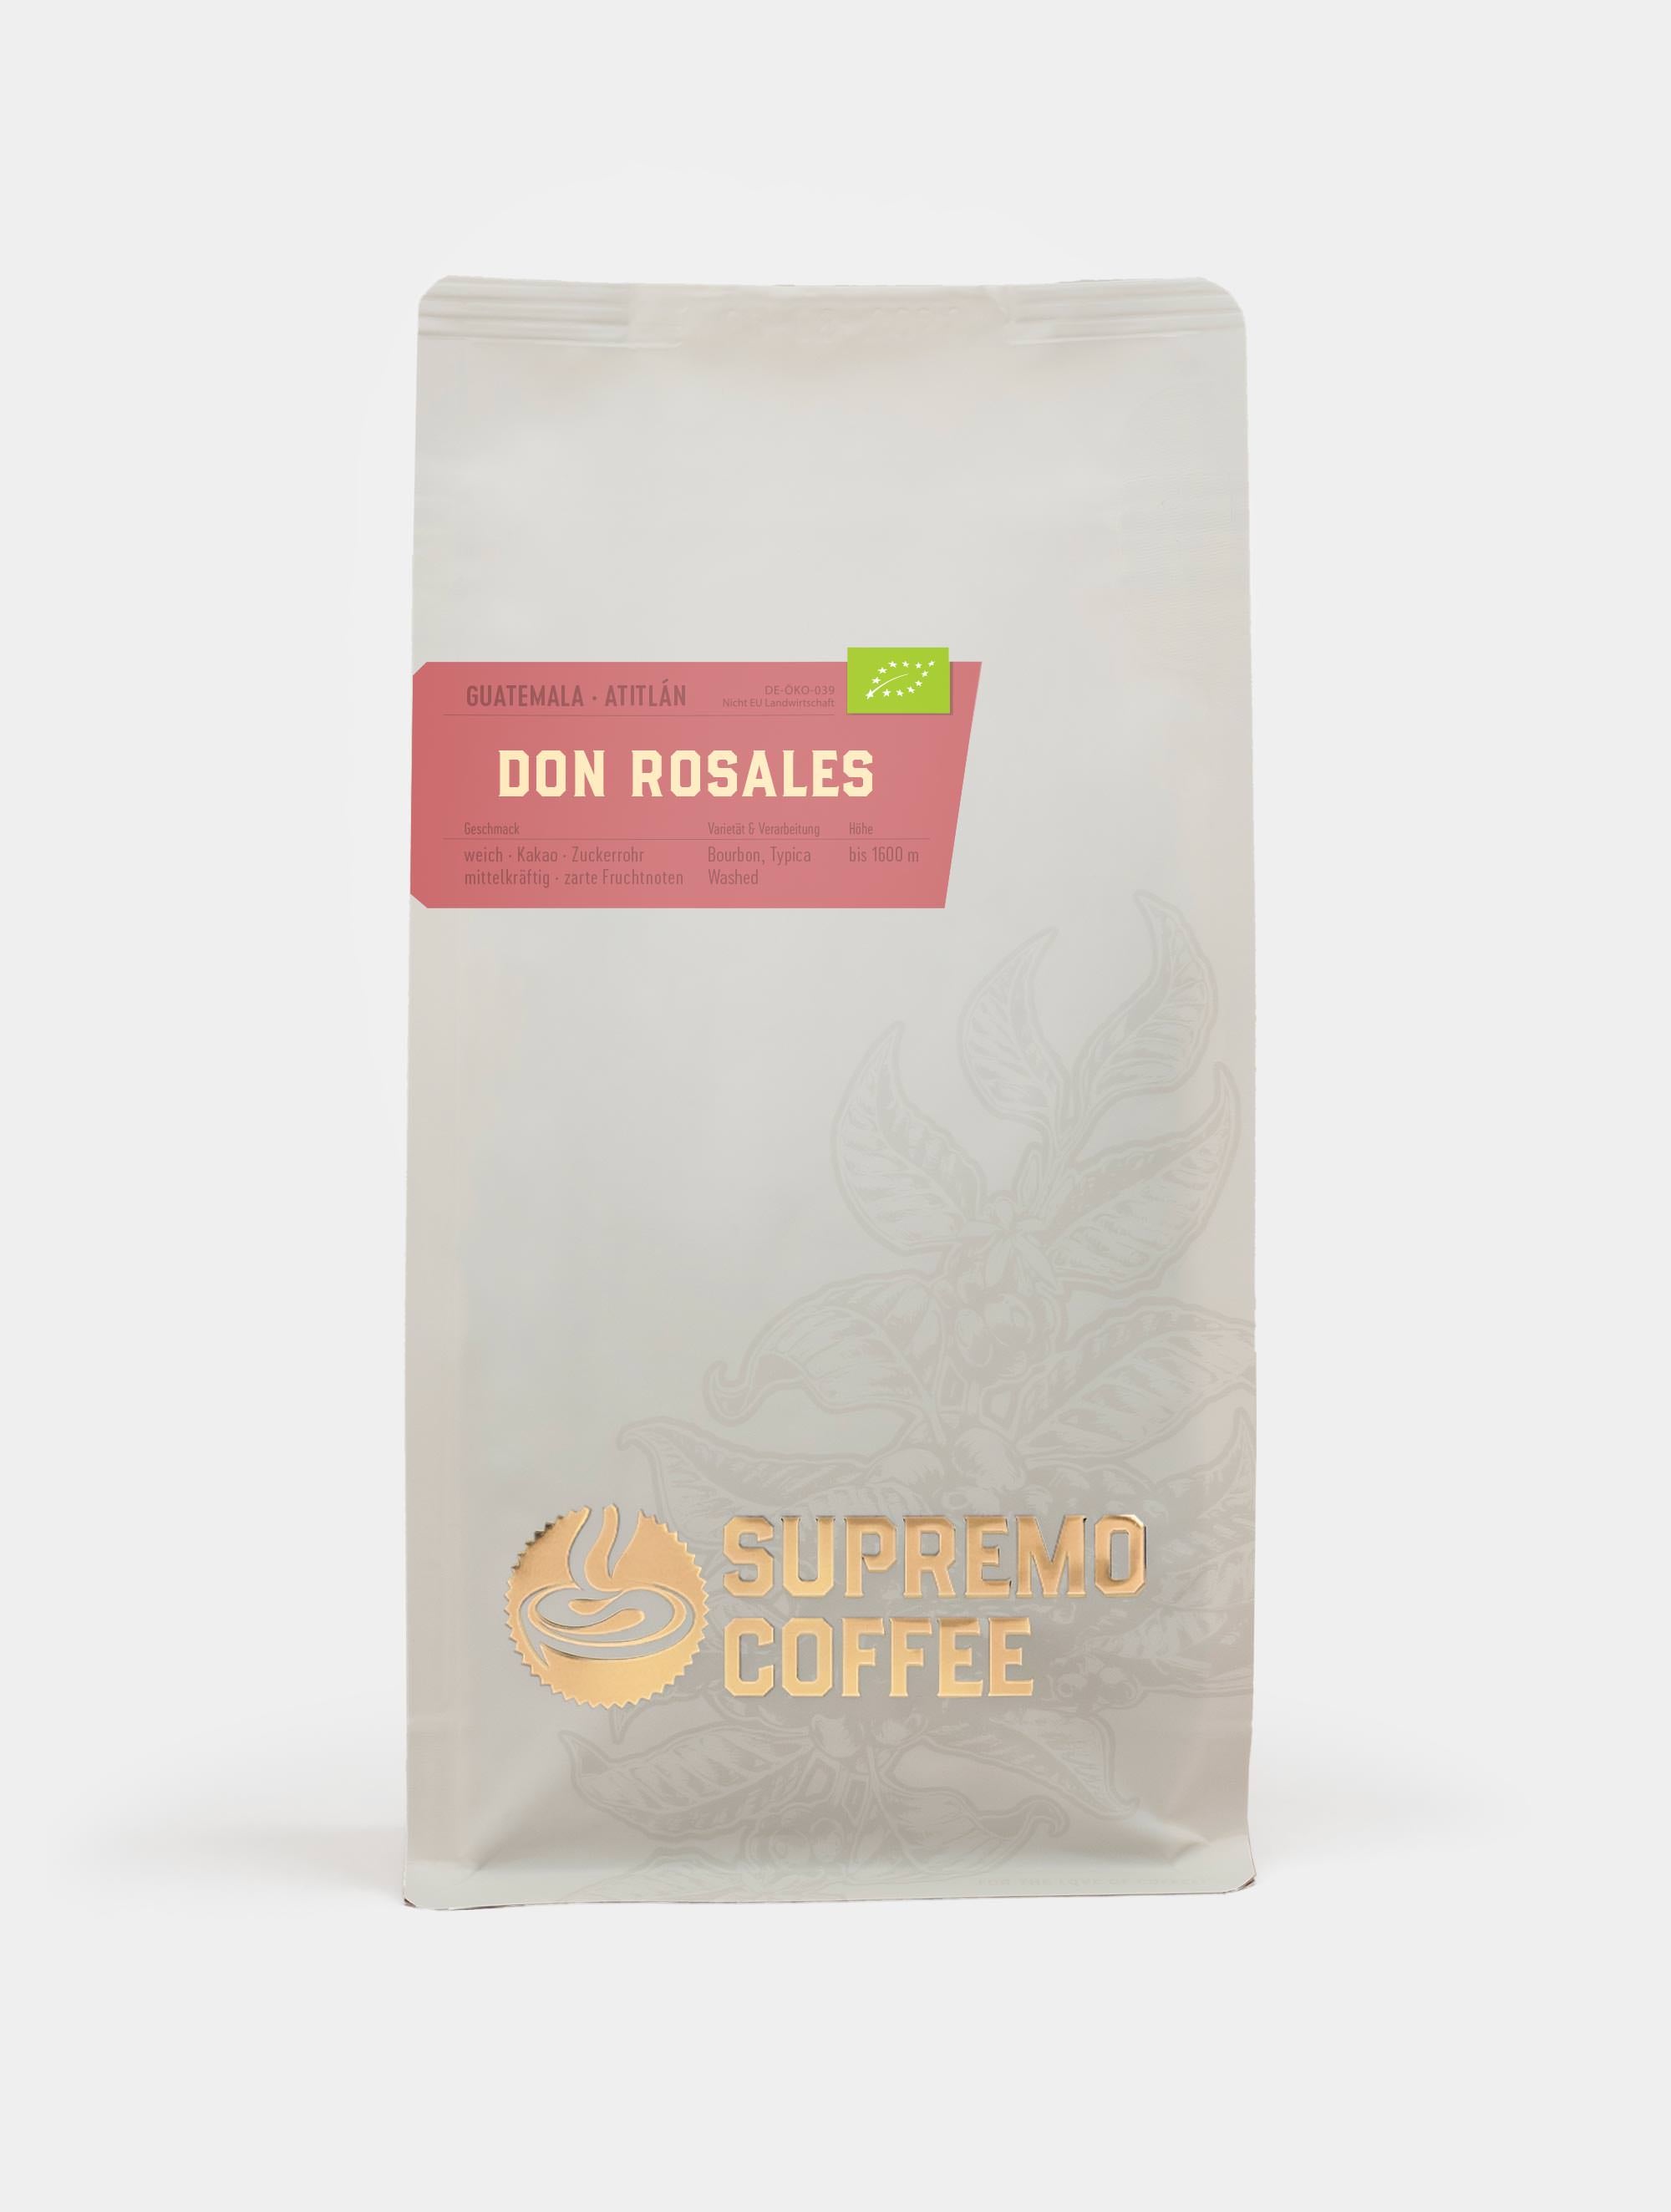 Don Rosales, Guatemala | SUPREMO Coffee